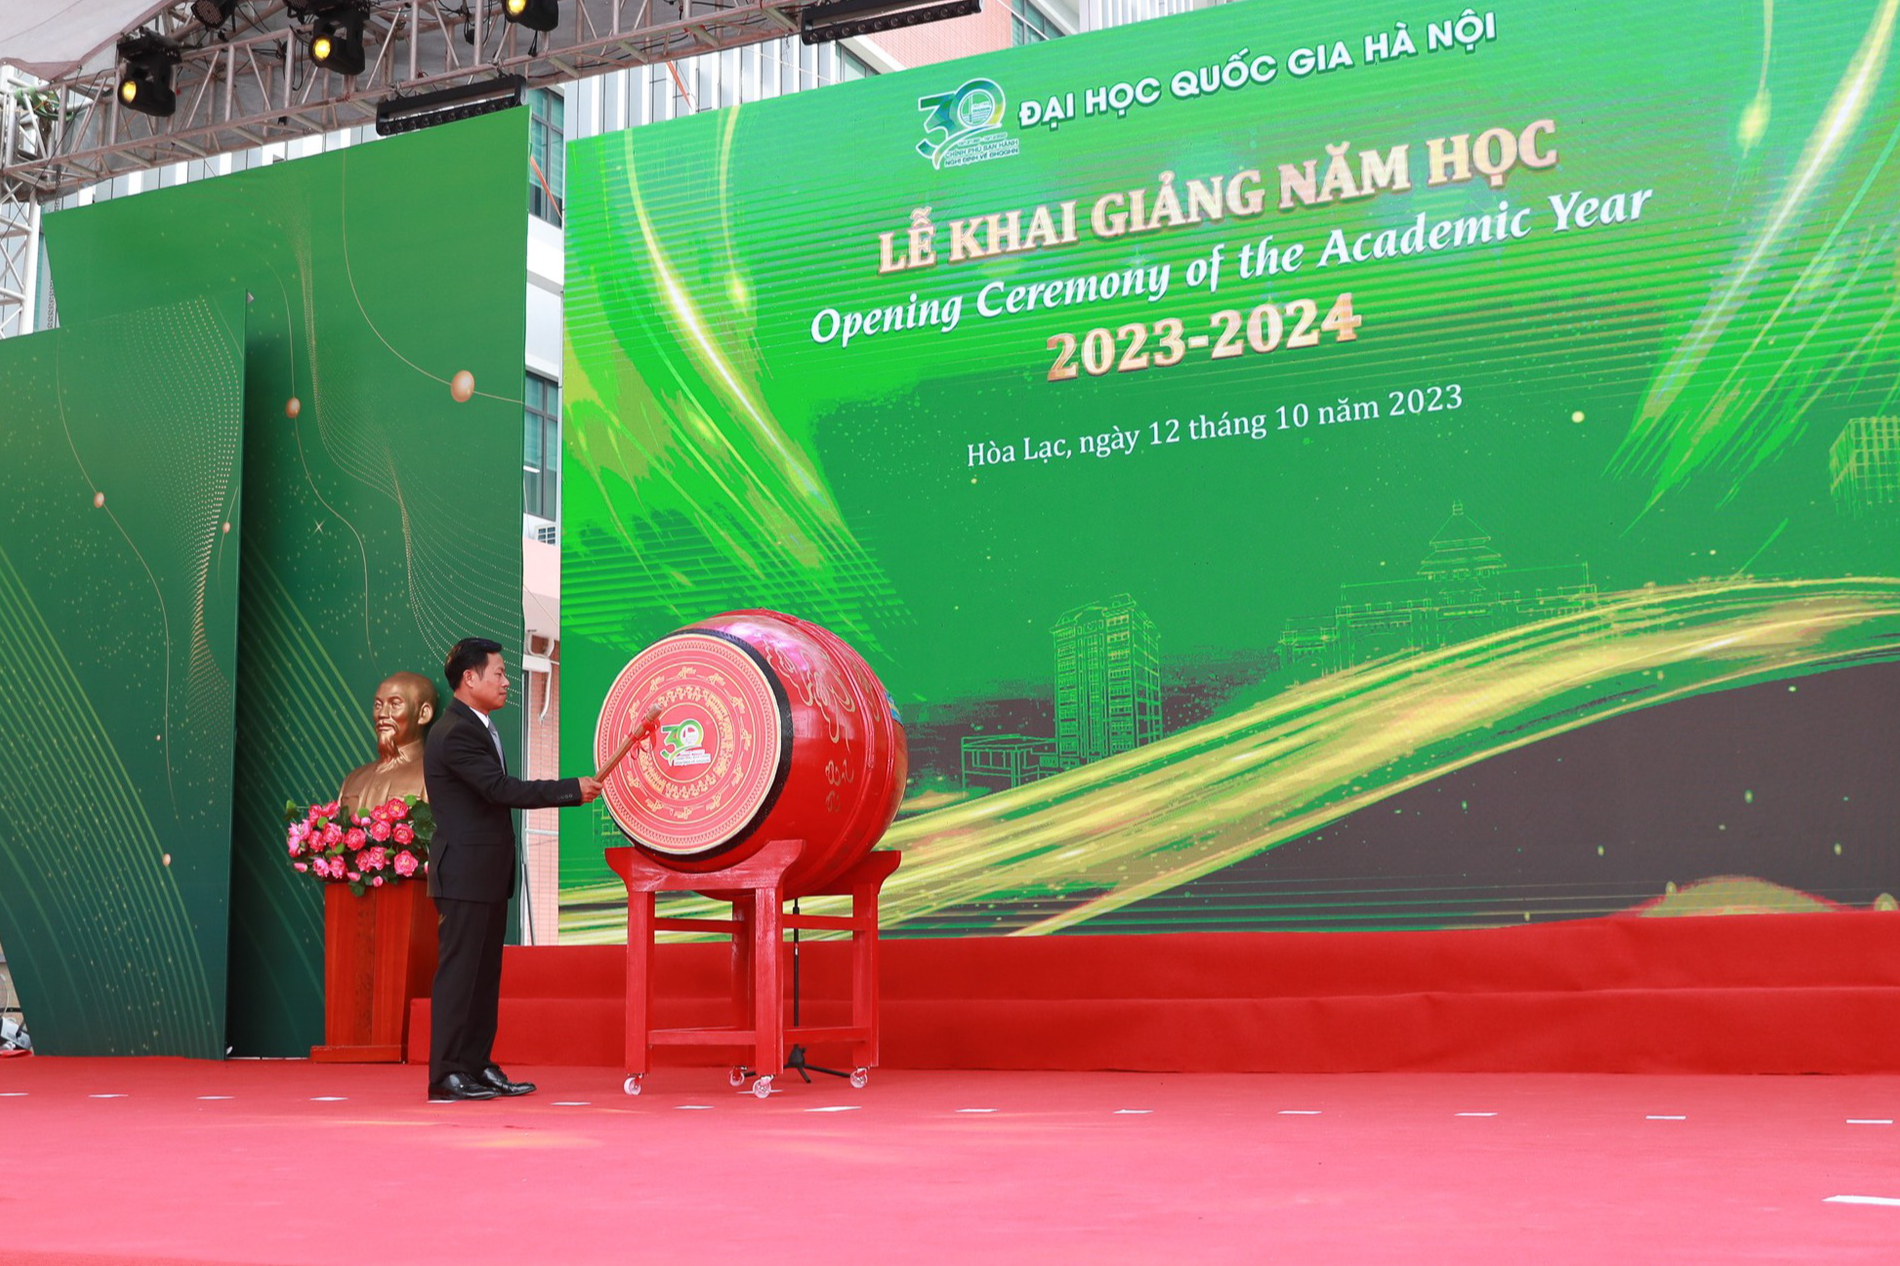 Đại học Quốc gia Hà Nội: Chuyển mình mạnh mẽ trở thành một đô thị đại học xanh - Ảnh 1.